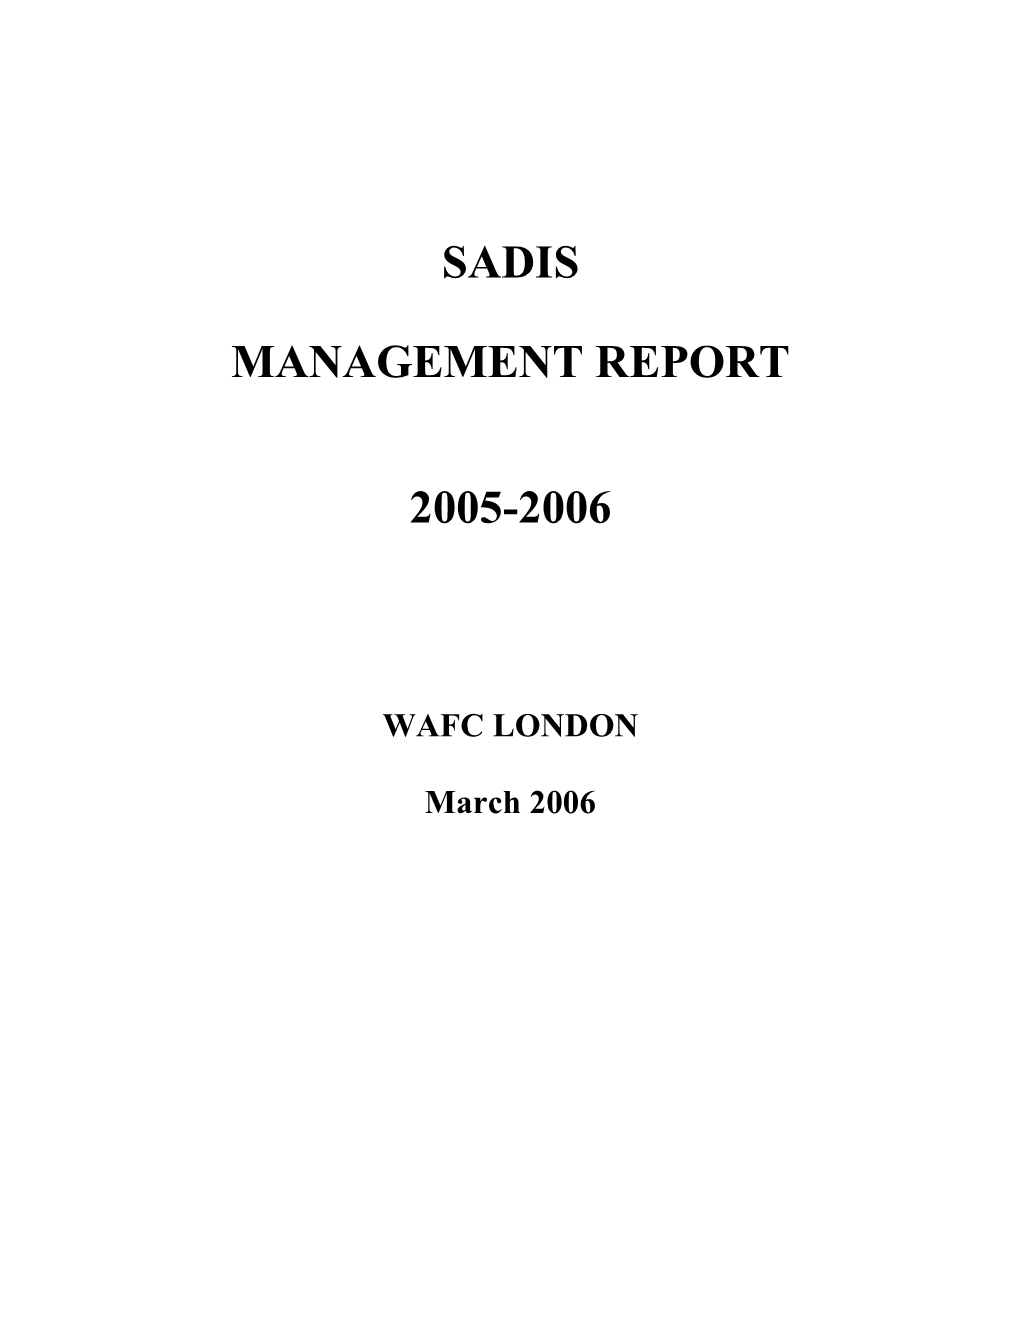 Sadis Management Report 2005-2006